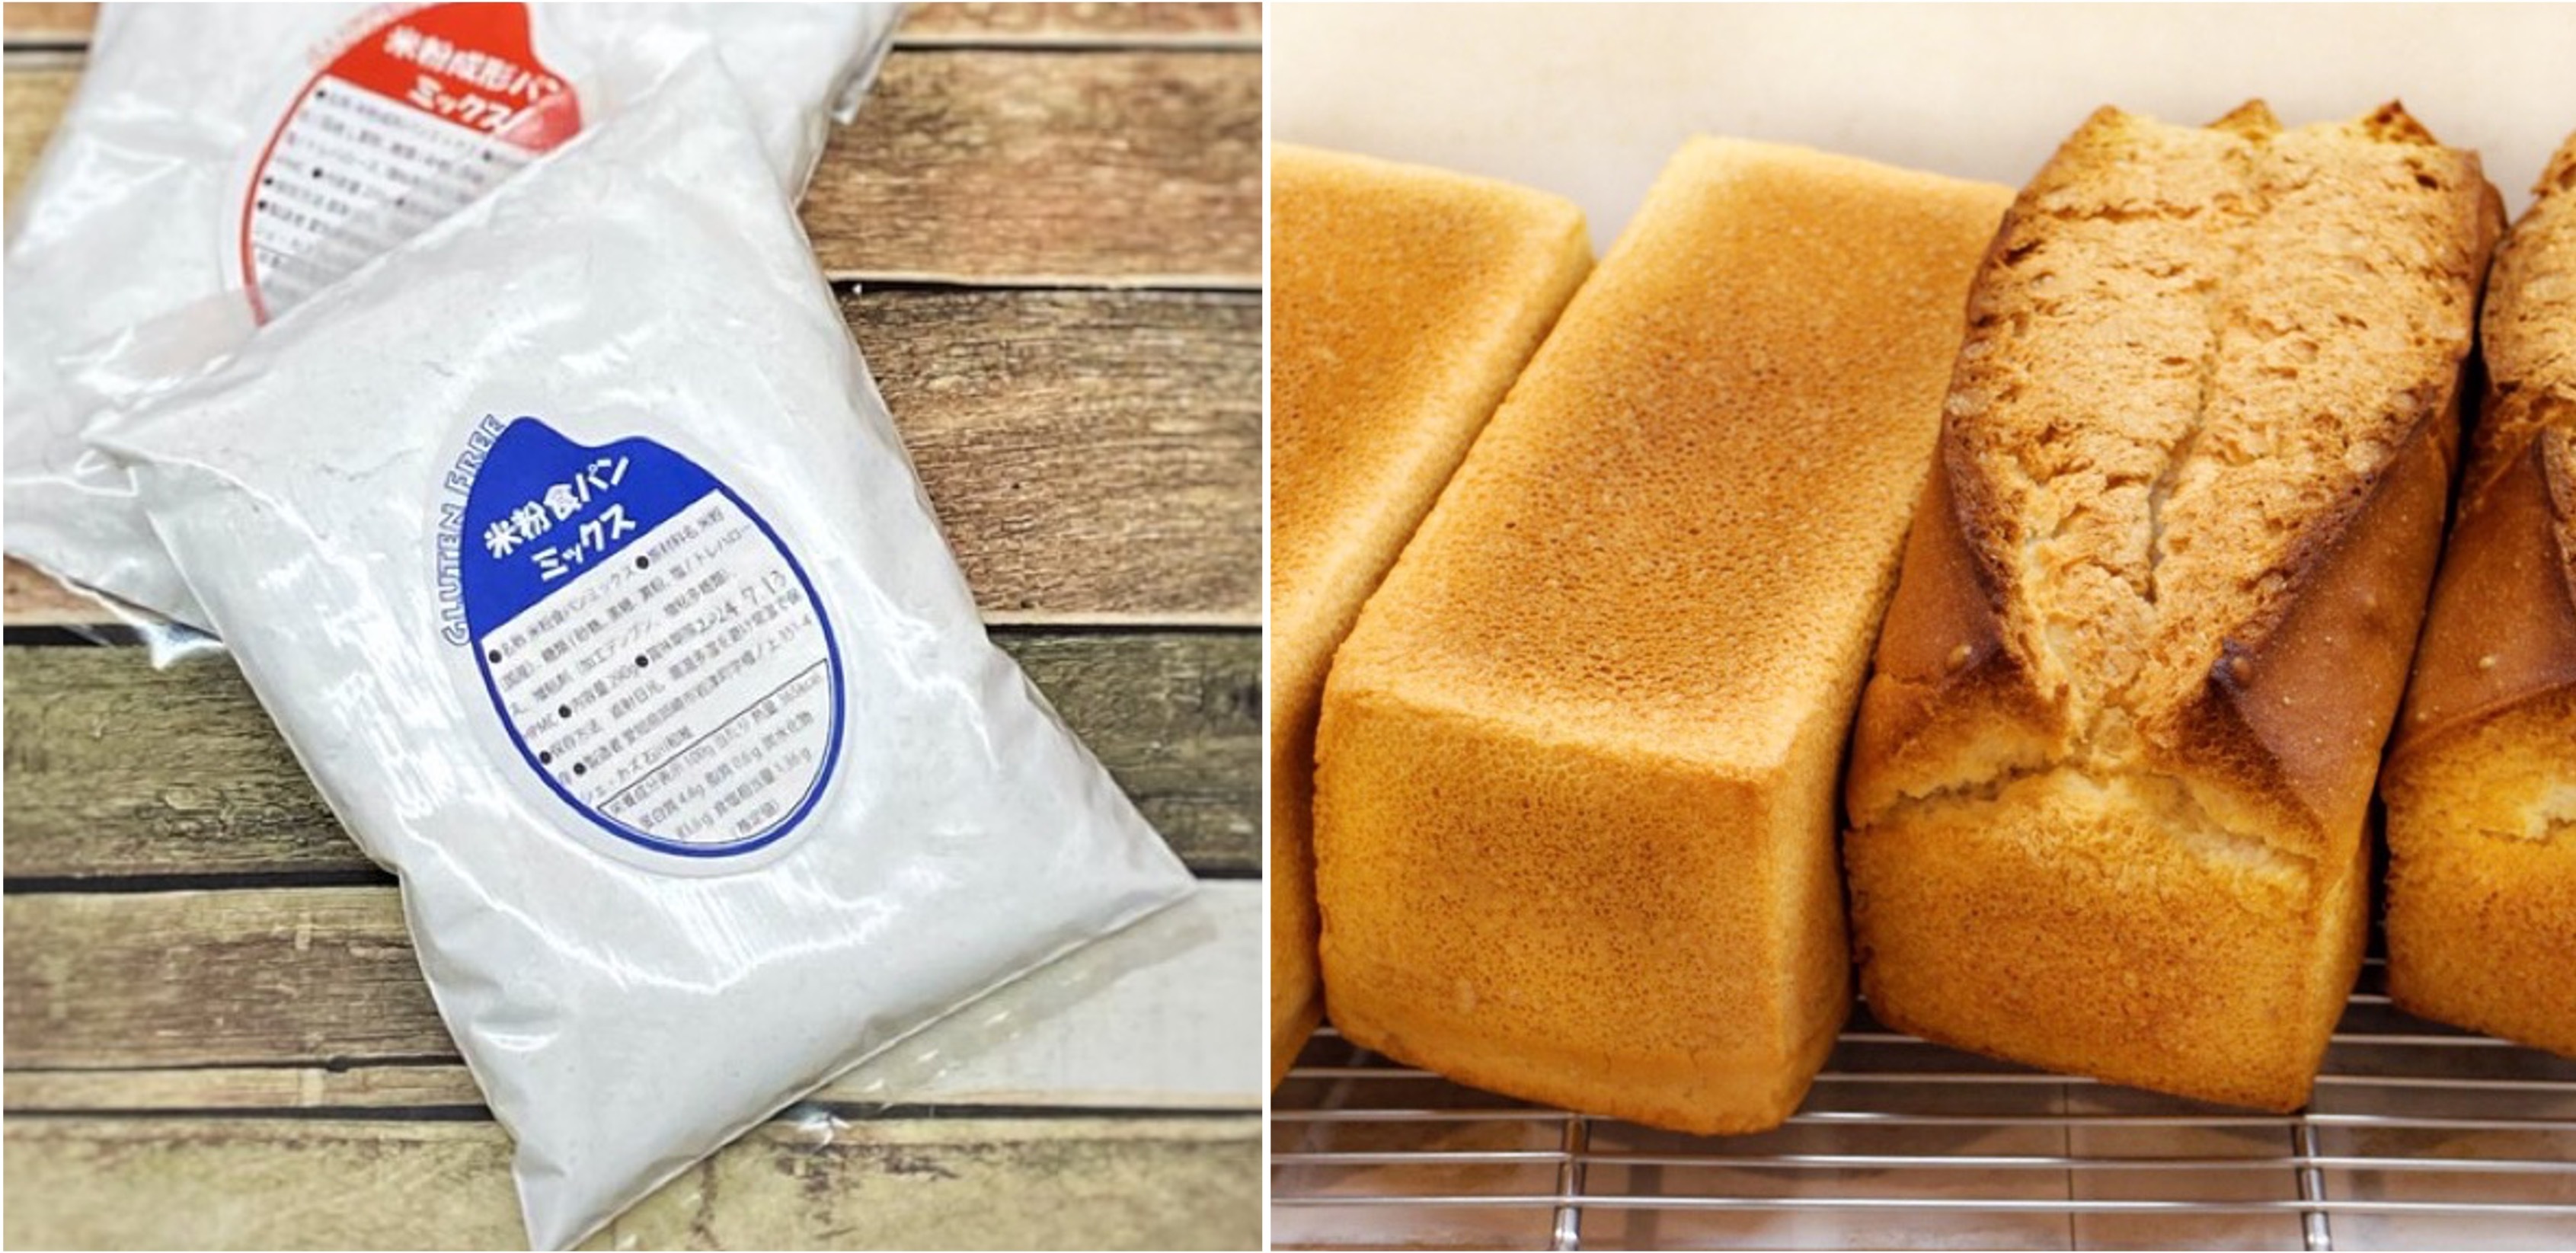 重度の小麦アレルギーをもつパティシエ開発、
グルテンフリーパンが簡単に作れる「米粉パンミックス粉」発売